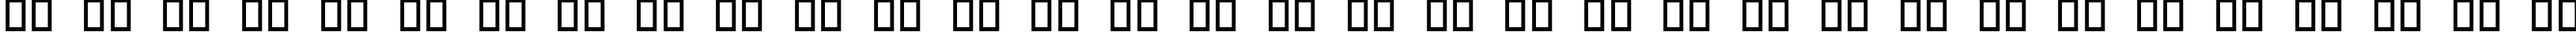 Пример написания русского алфавита шрифтом Webdings